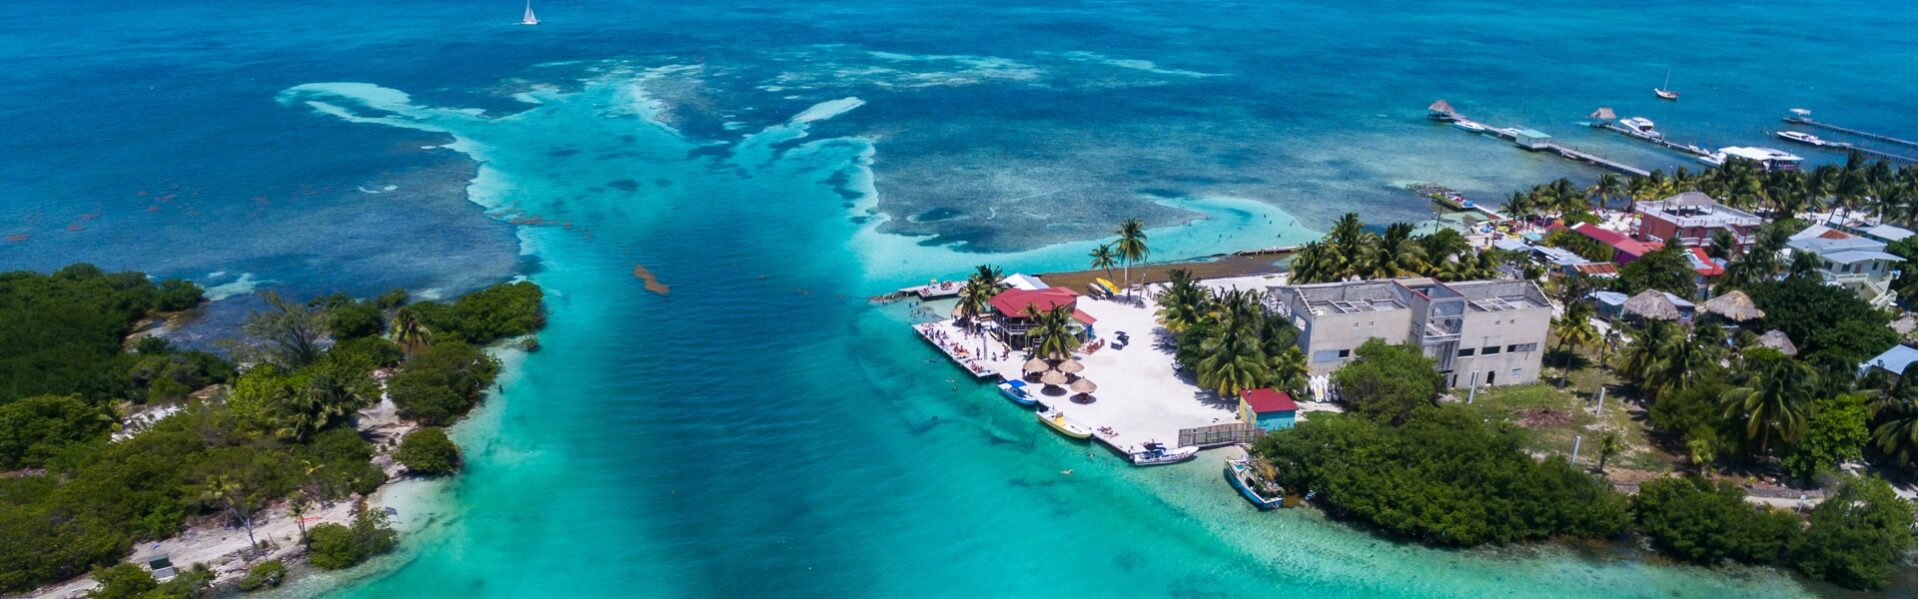 Belize reisinformatie voor jouw vakantie